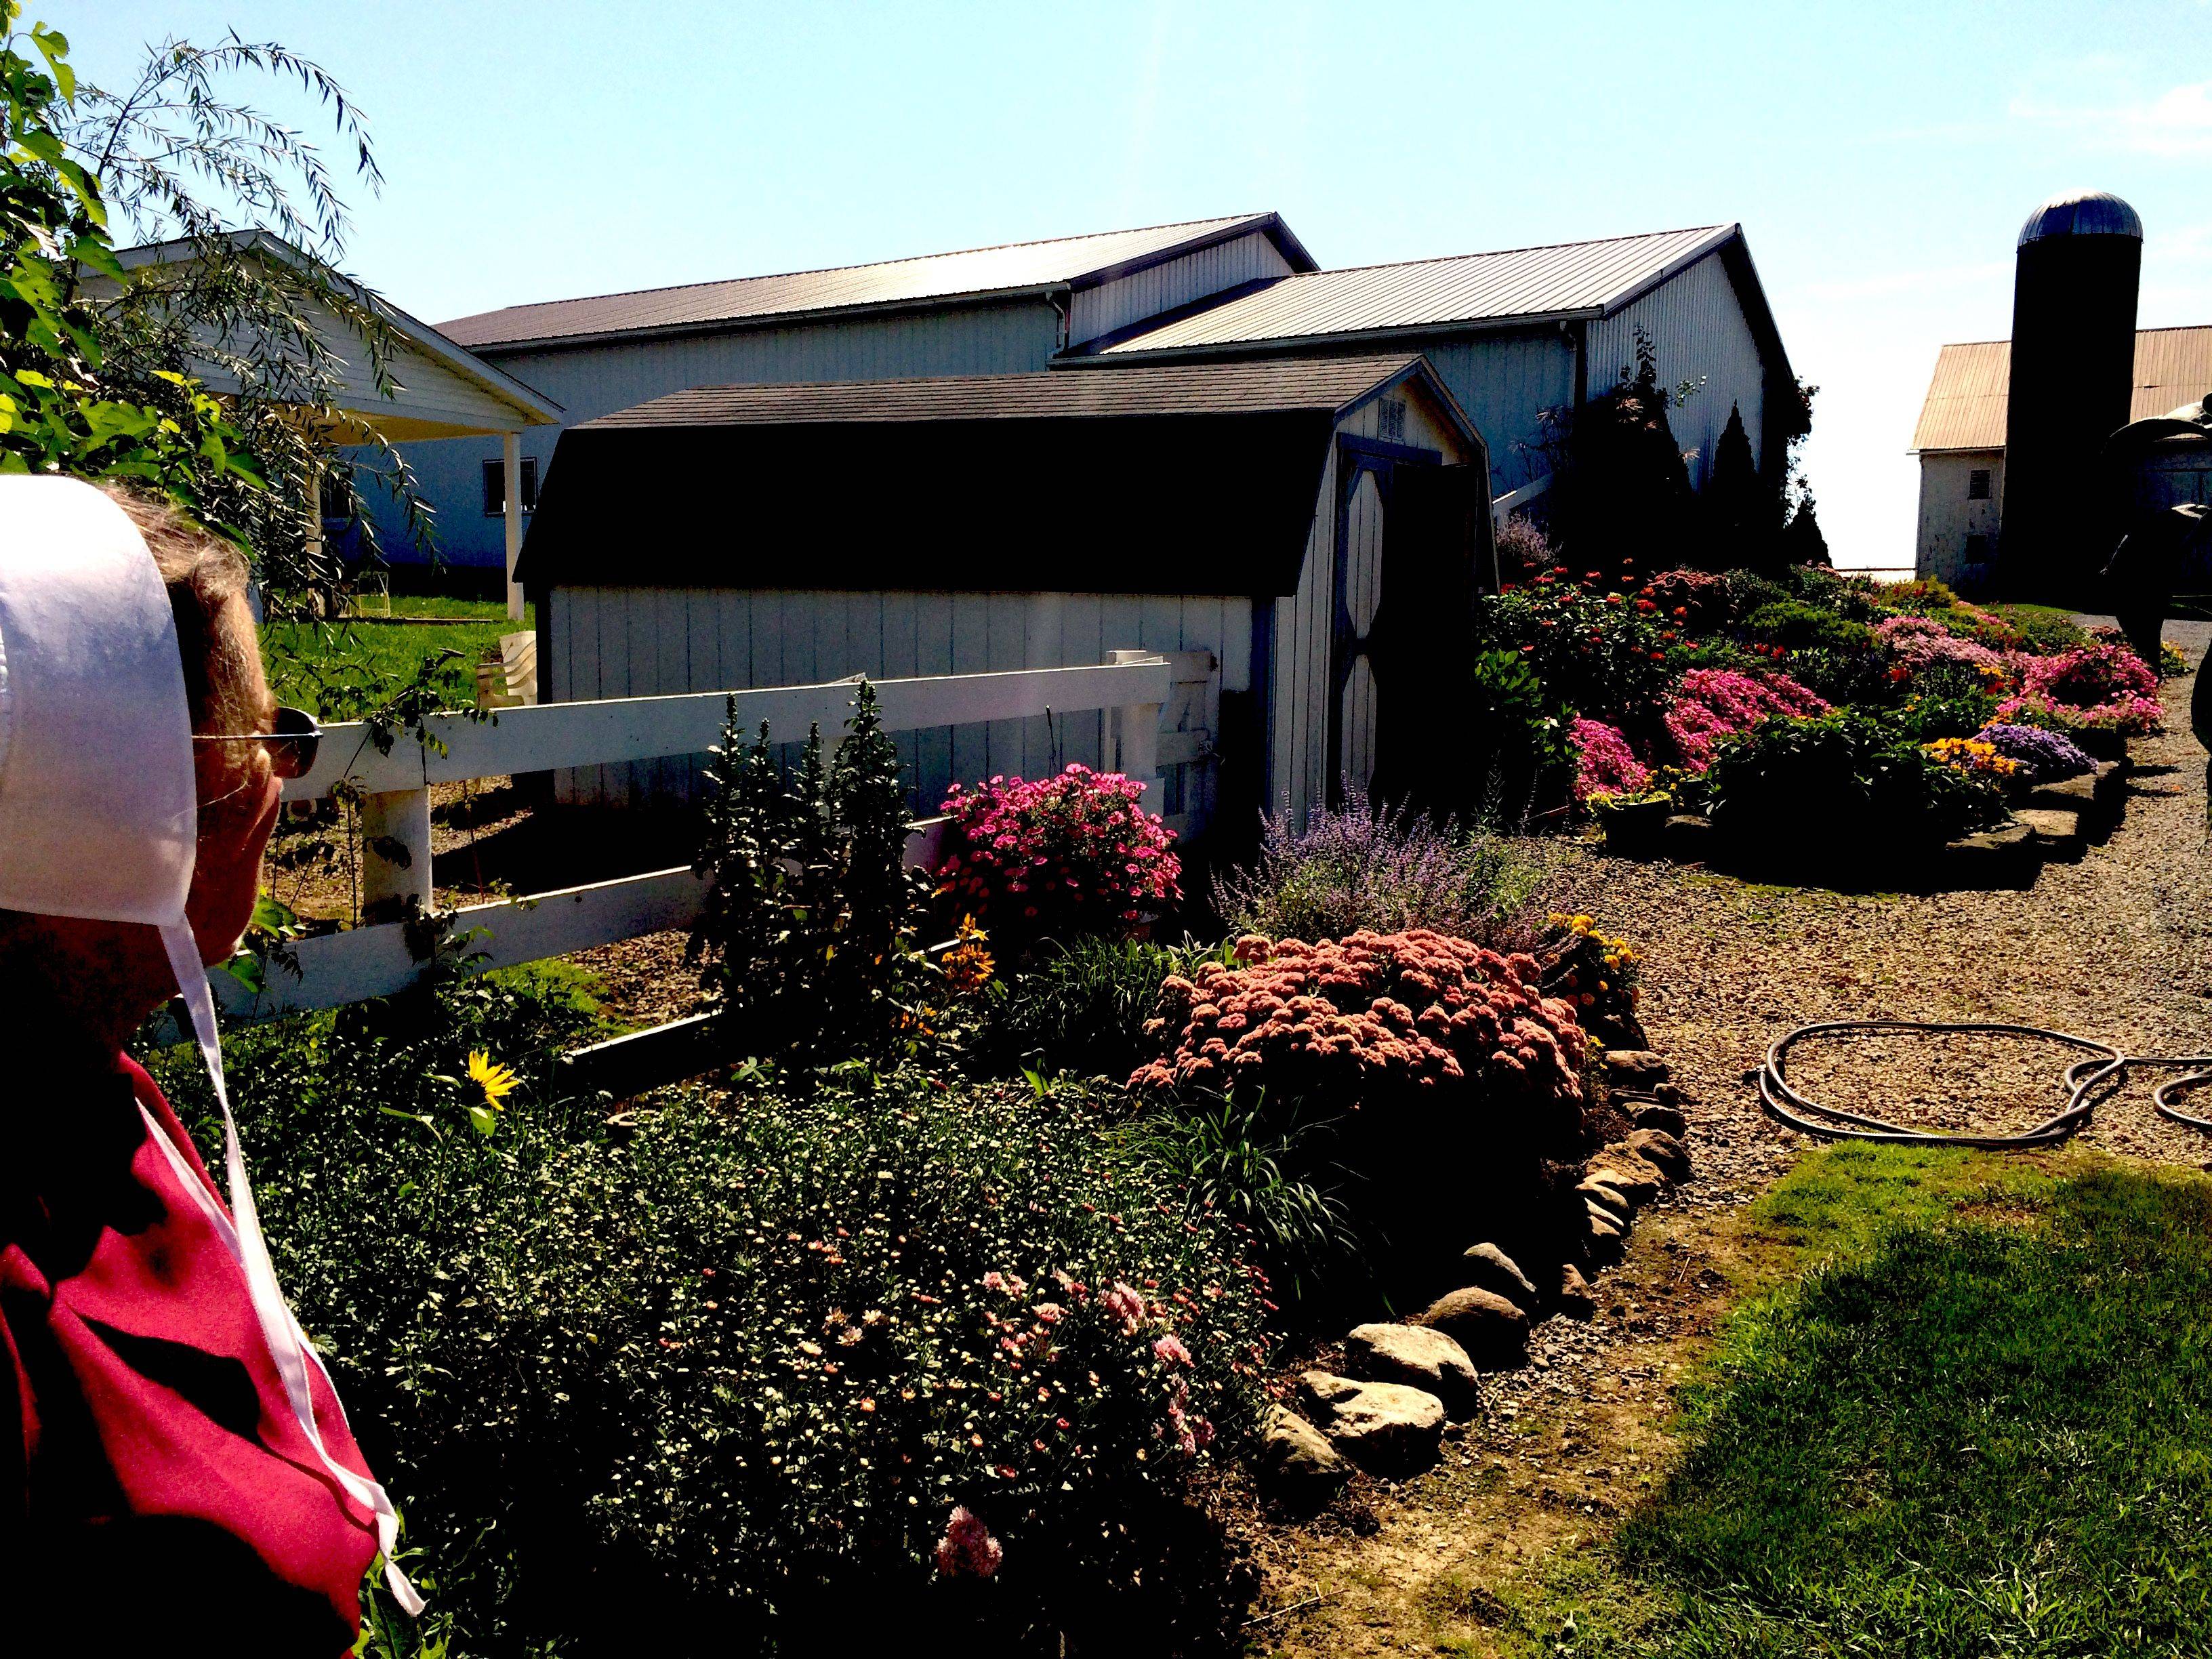 Amish Flower Gardens